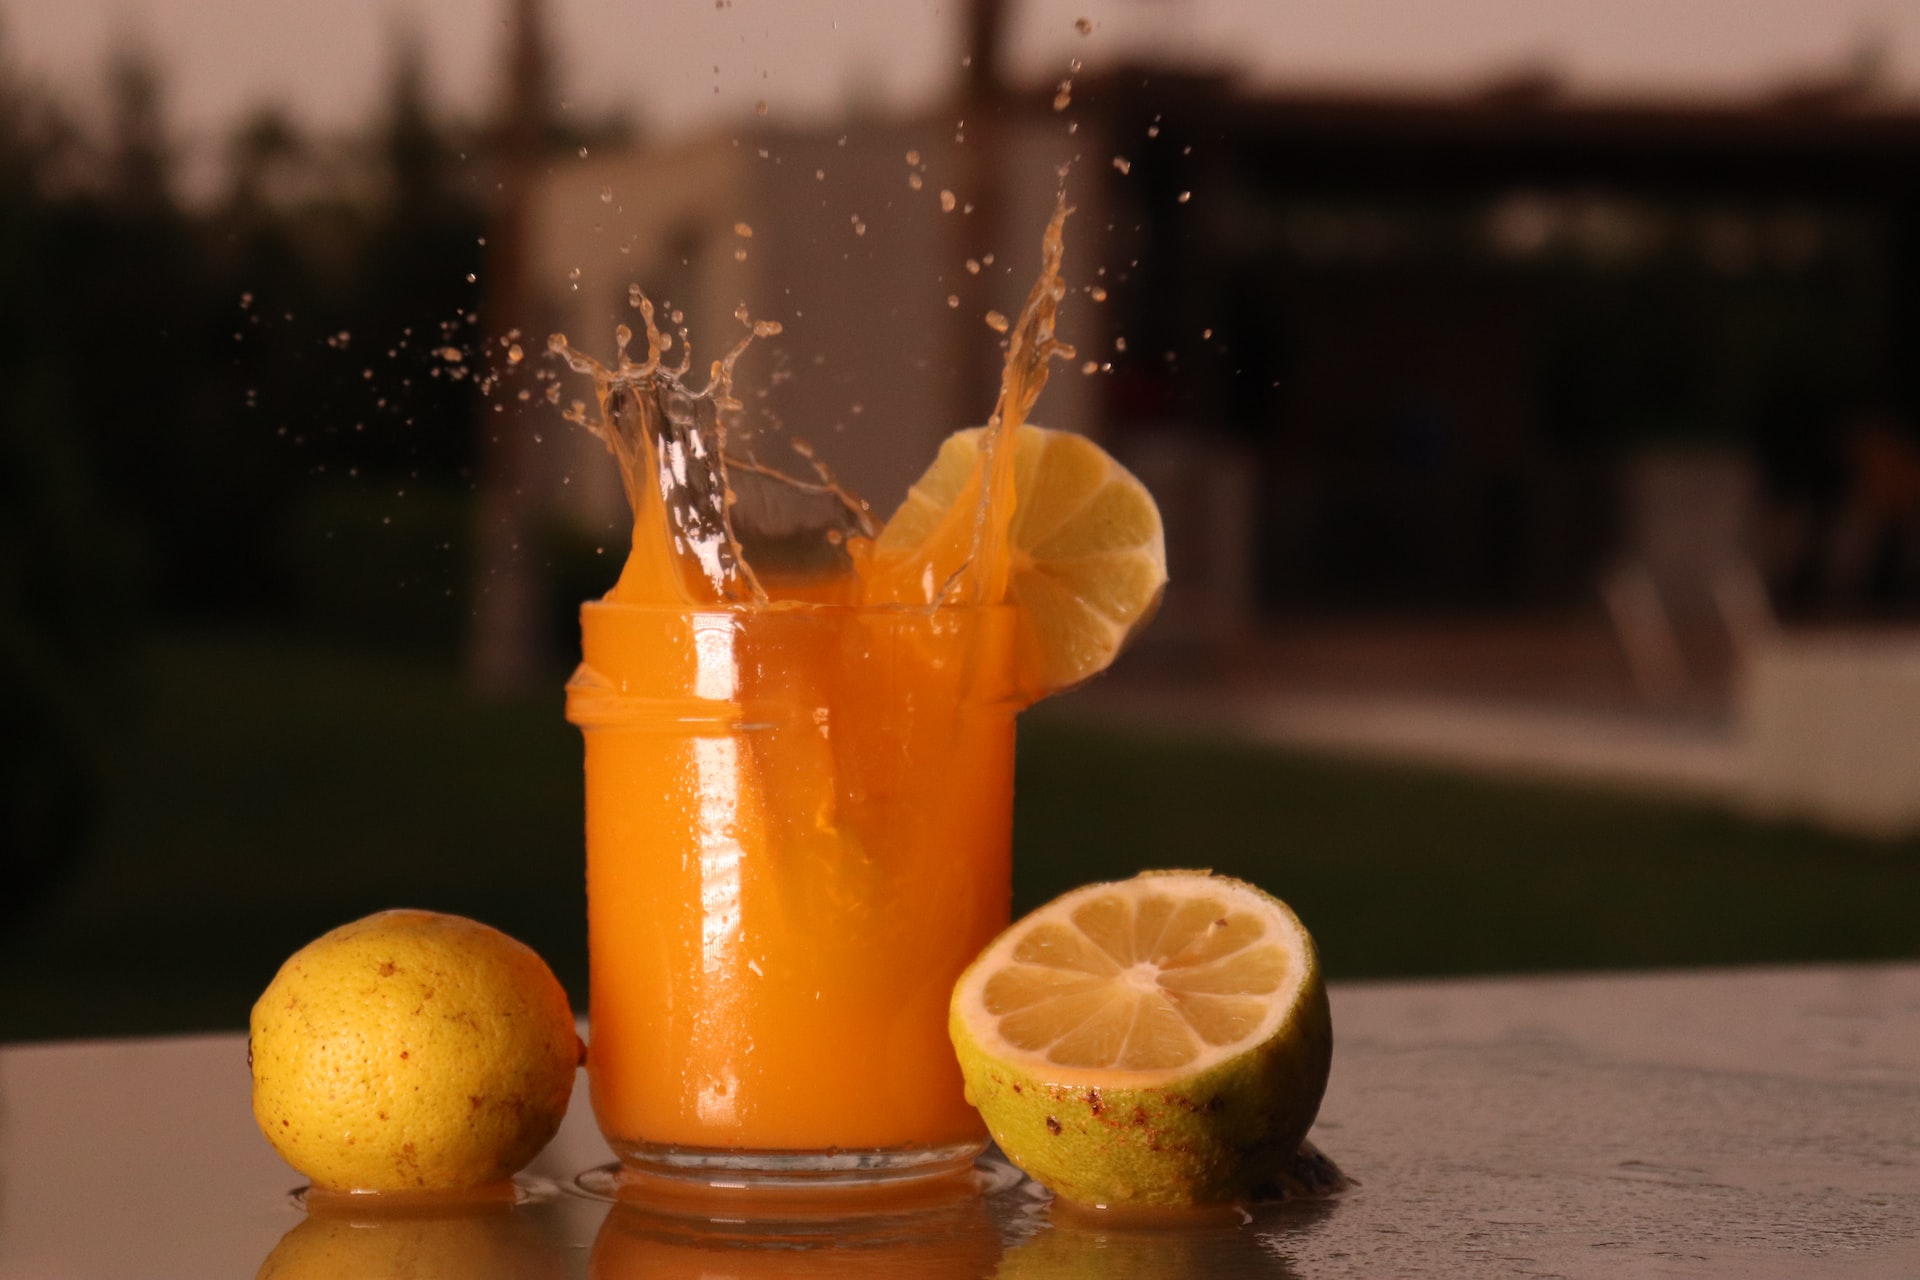 Ποια ώρα της ημέρας να αποφεύγεις τον χυμό πορτοκαλιού και τι μπορεί να προκαλέσει στον οργανισμό